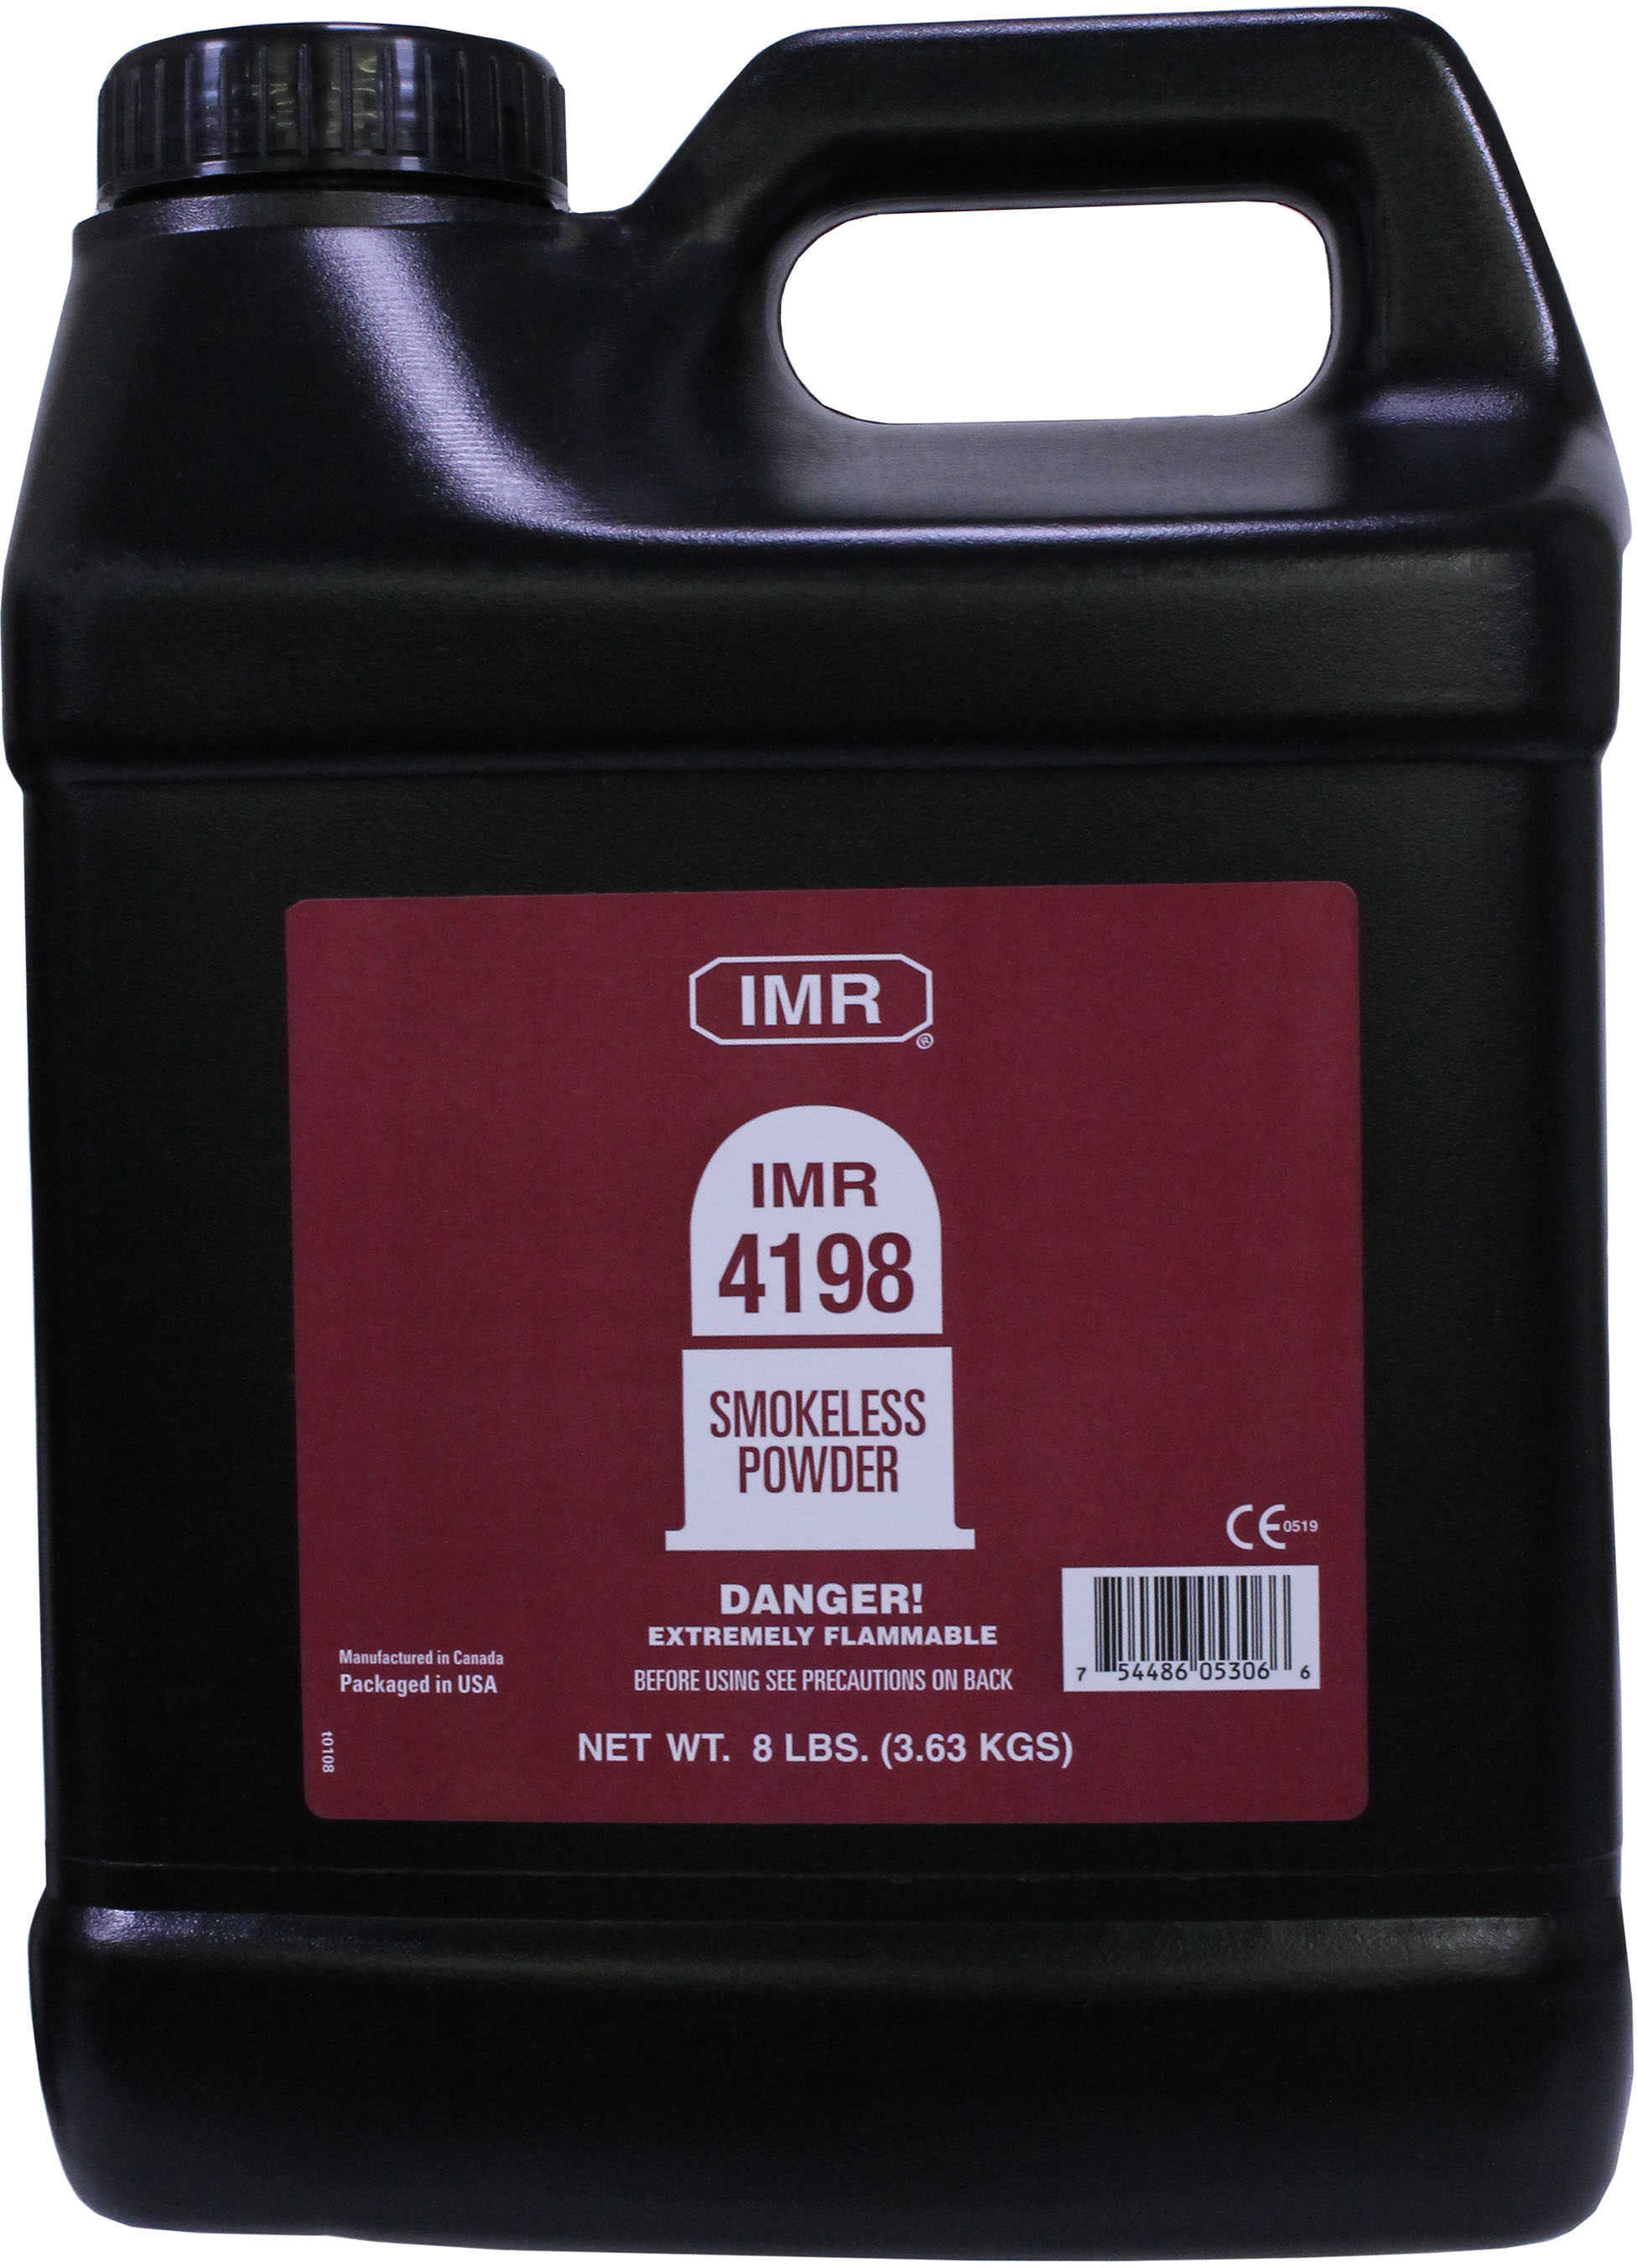 IMR 4198 Smokeless Powder 8 Lbs